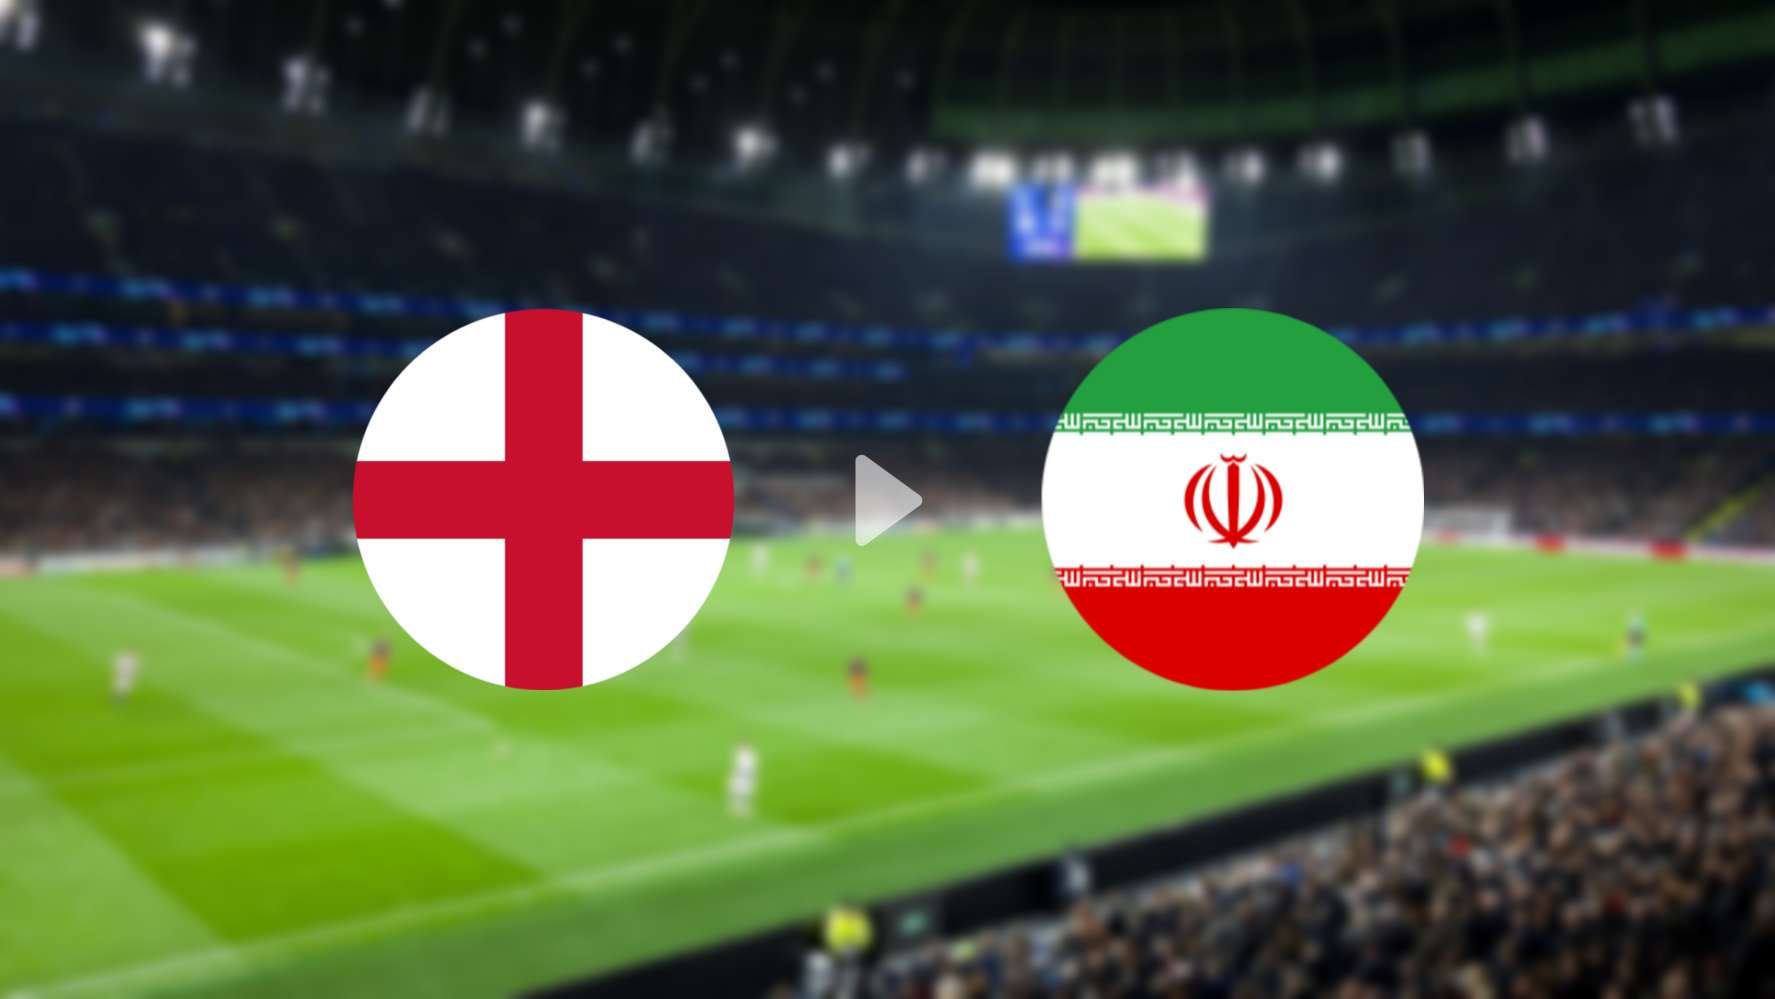 LIVE Streaming SCTV Piala Dunia 2022 Inggris vs Iran Malam Ini Bisa